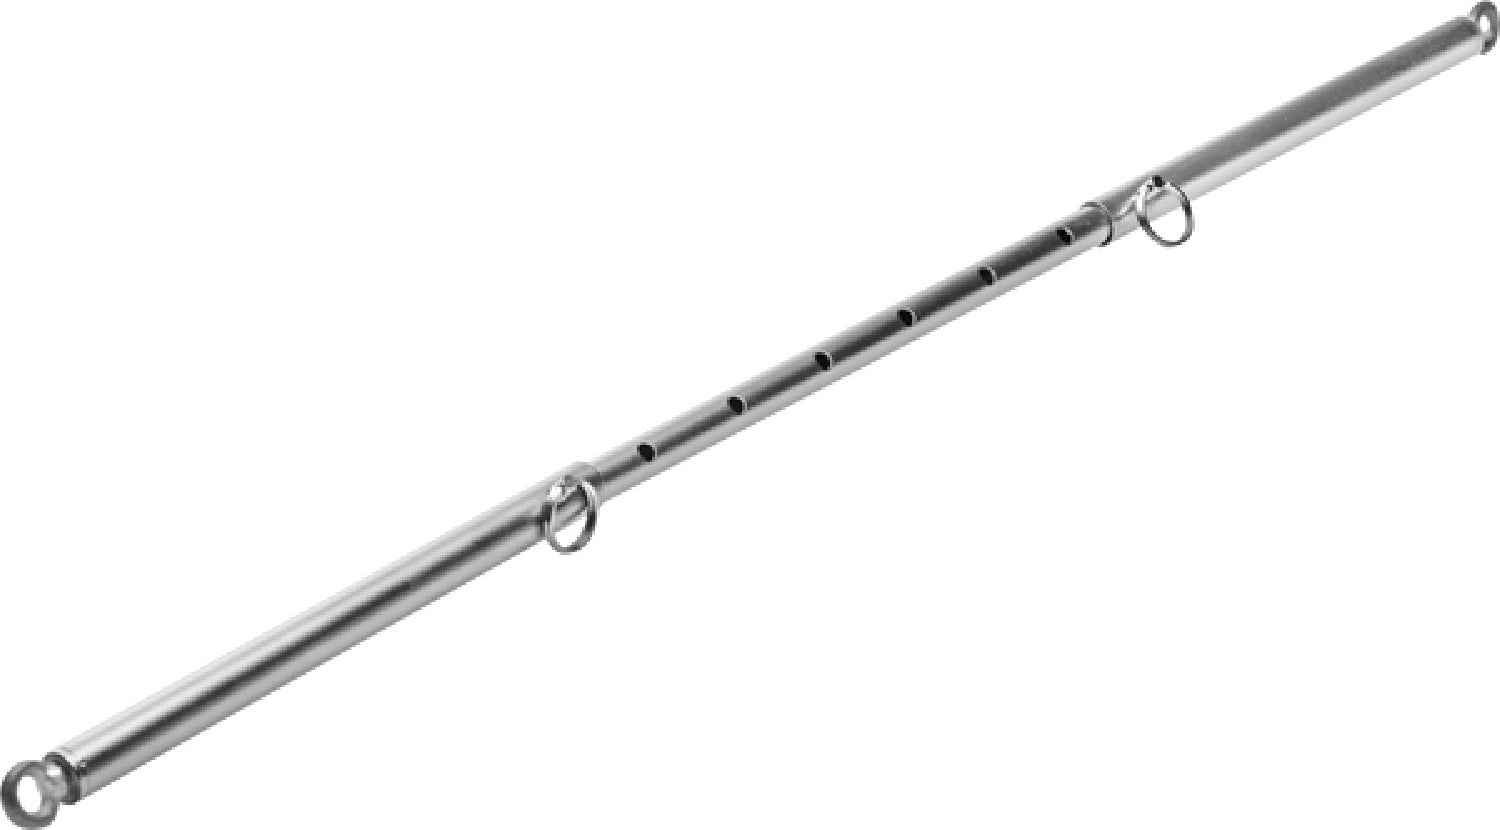 Adjustable Steel Spreader Bar - Chrome